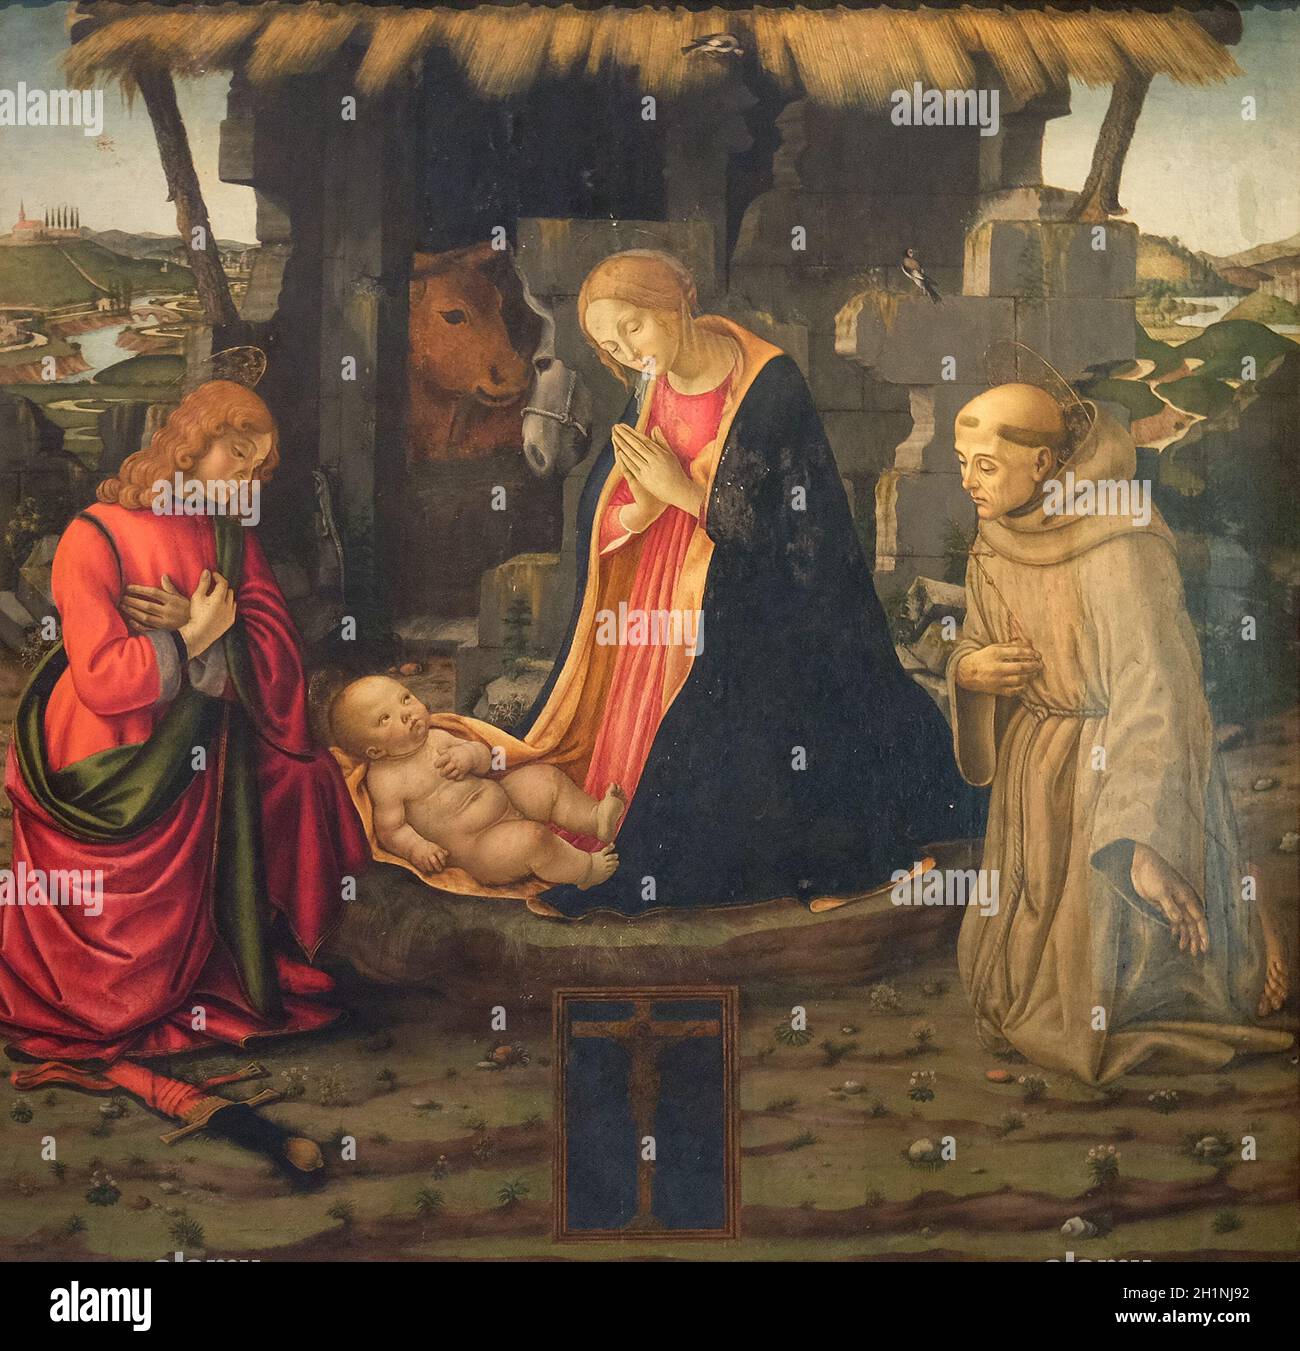 Scène de la nativité avec les saints Julien et Francis, de l'École de Domenico Ghirlandaio la basilique San Lorenzo à Florence, Italie Banque D'Images